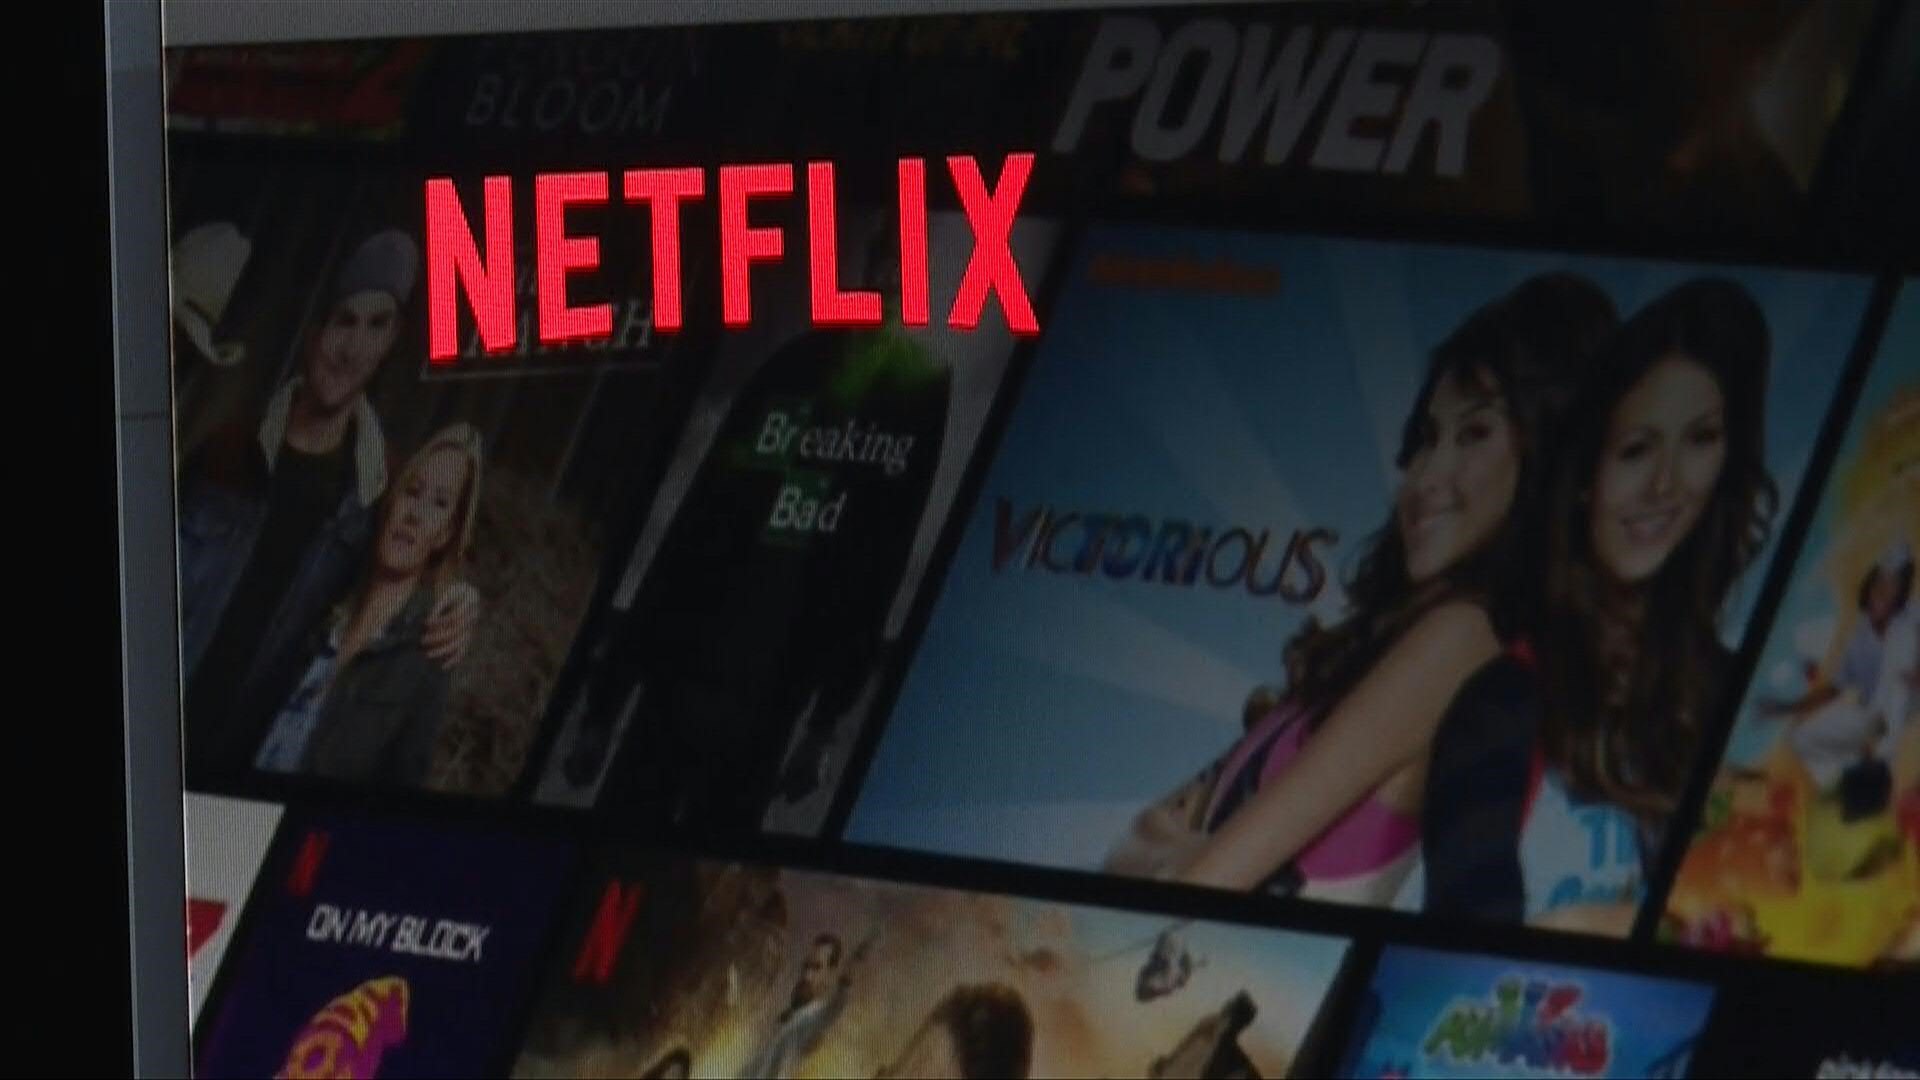 Netflix fue el servicio de streaming más visto el mes pasado, impulsado por su serie “Stranger Things”